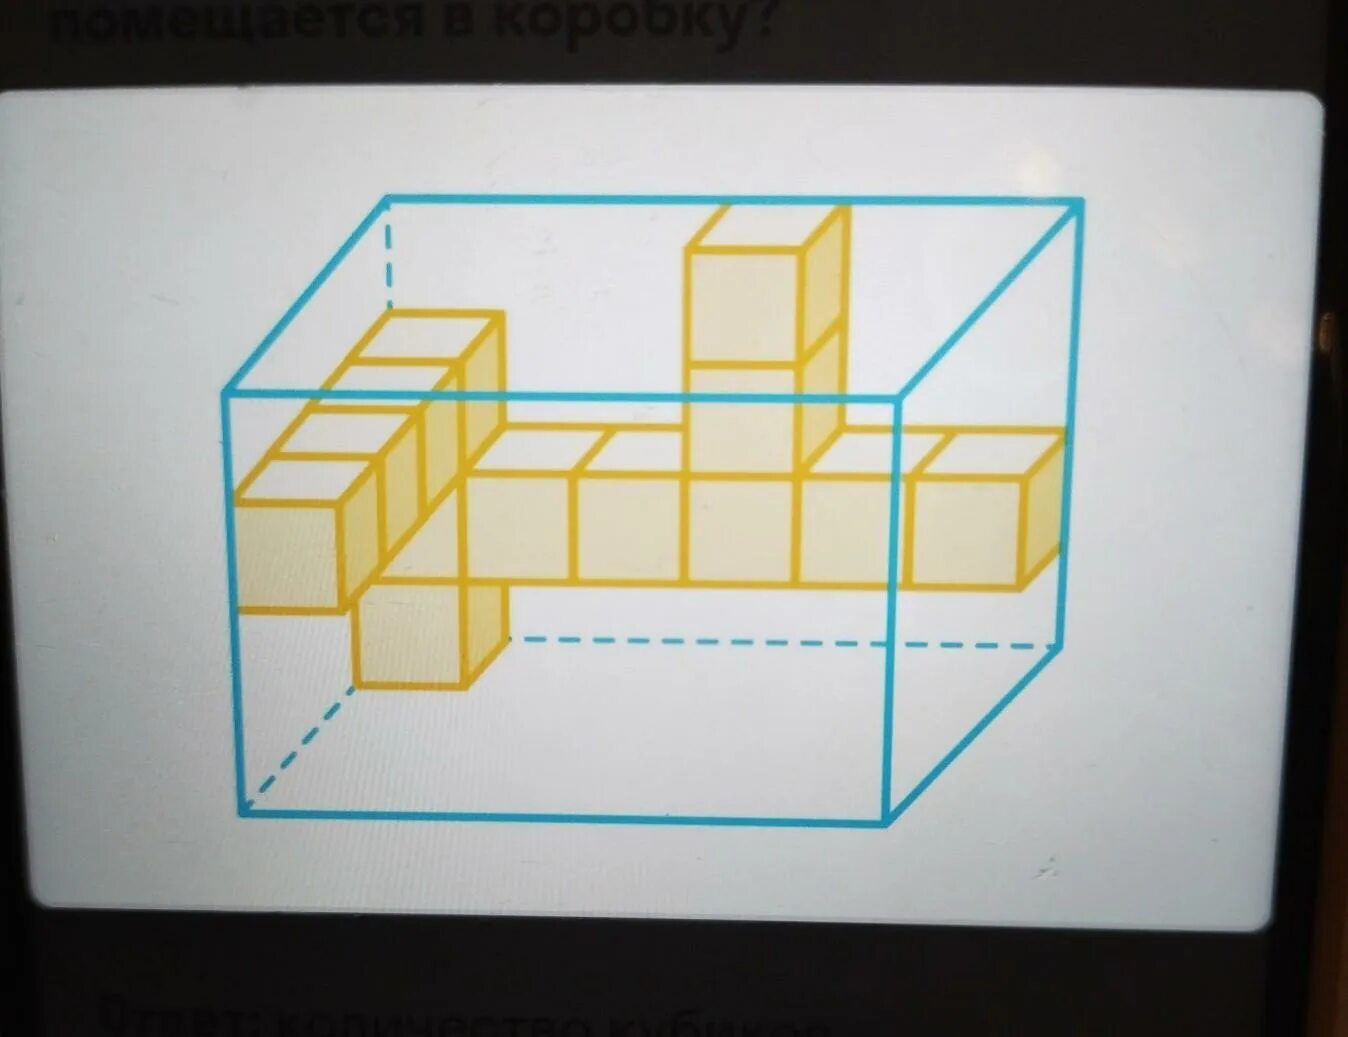 Из кубиков собрали параллелепипед. Сказочный город из параллелепипеда. Маша составила из кубиков параллелепипед. Малыш укладывает кубики в коробку в длину можно уложить 5 кубиков.